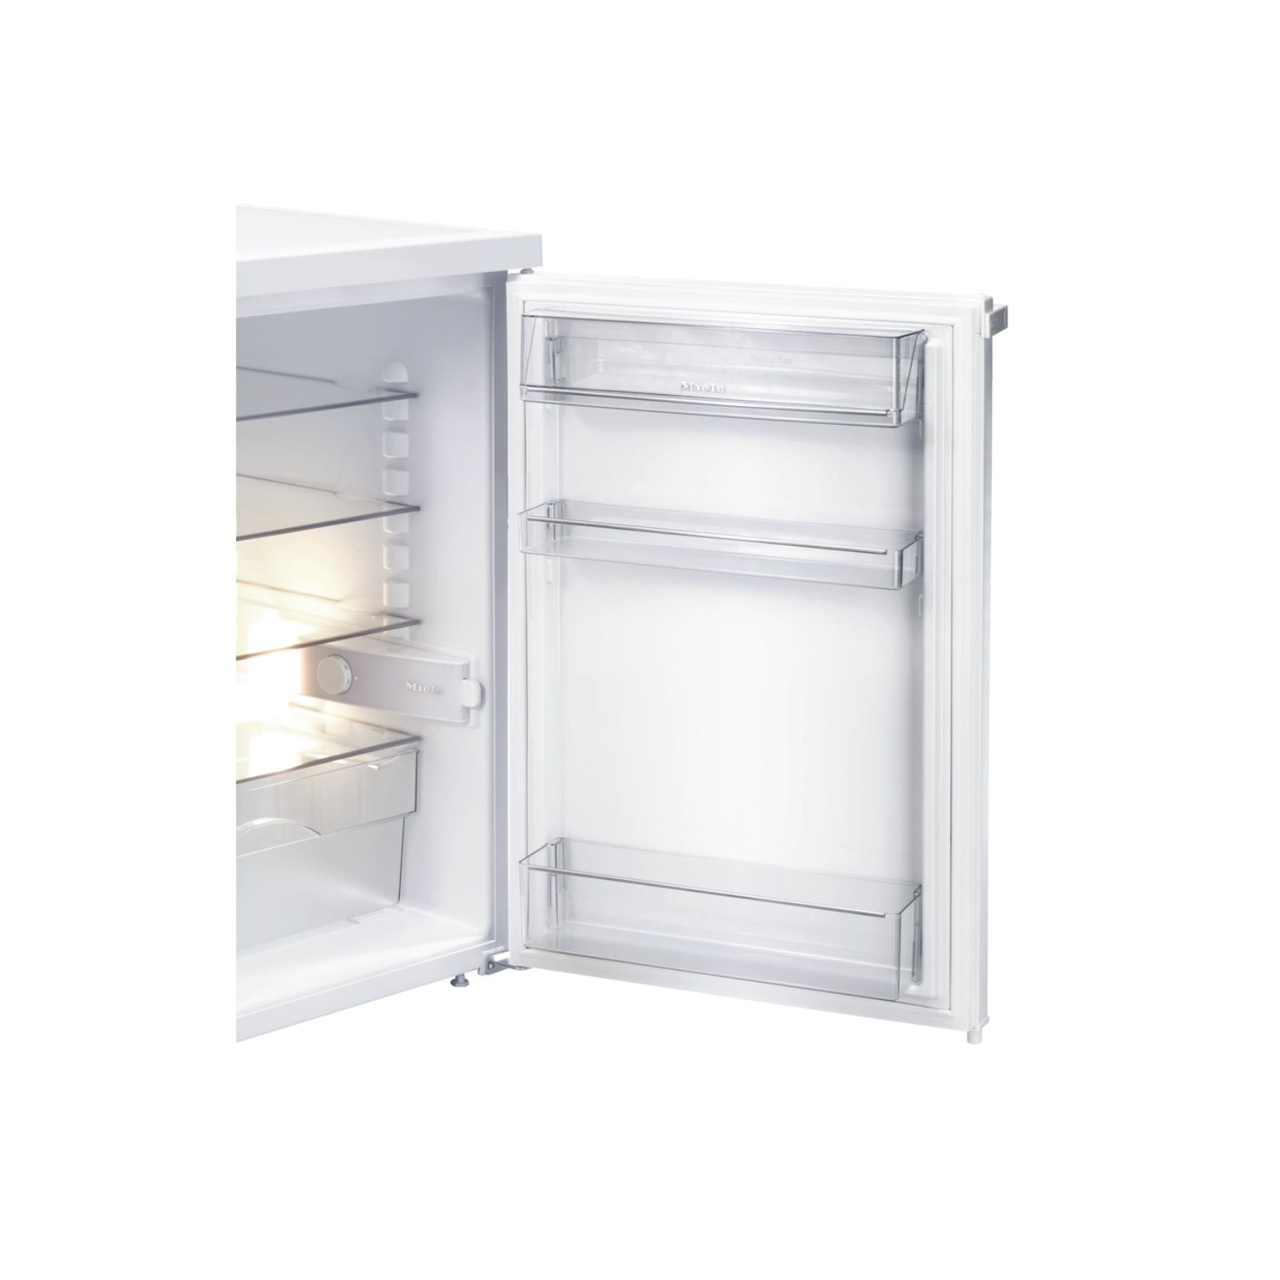 Fristående kylskåp K12010S2